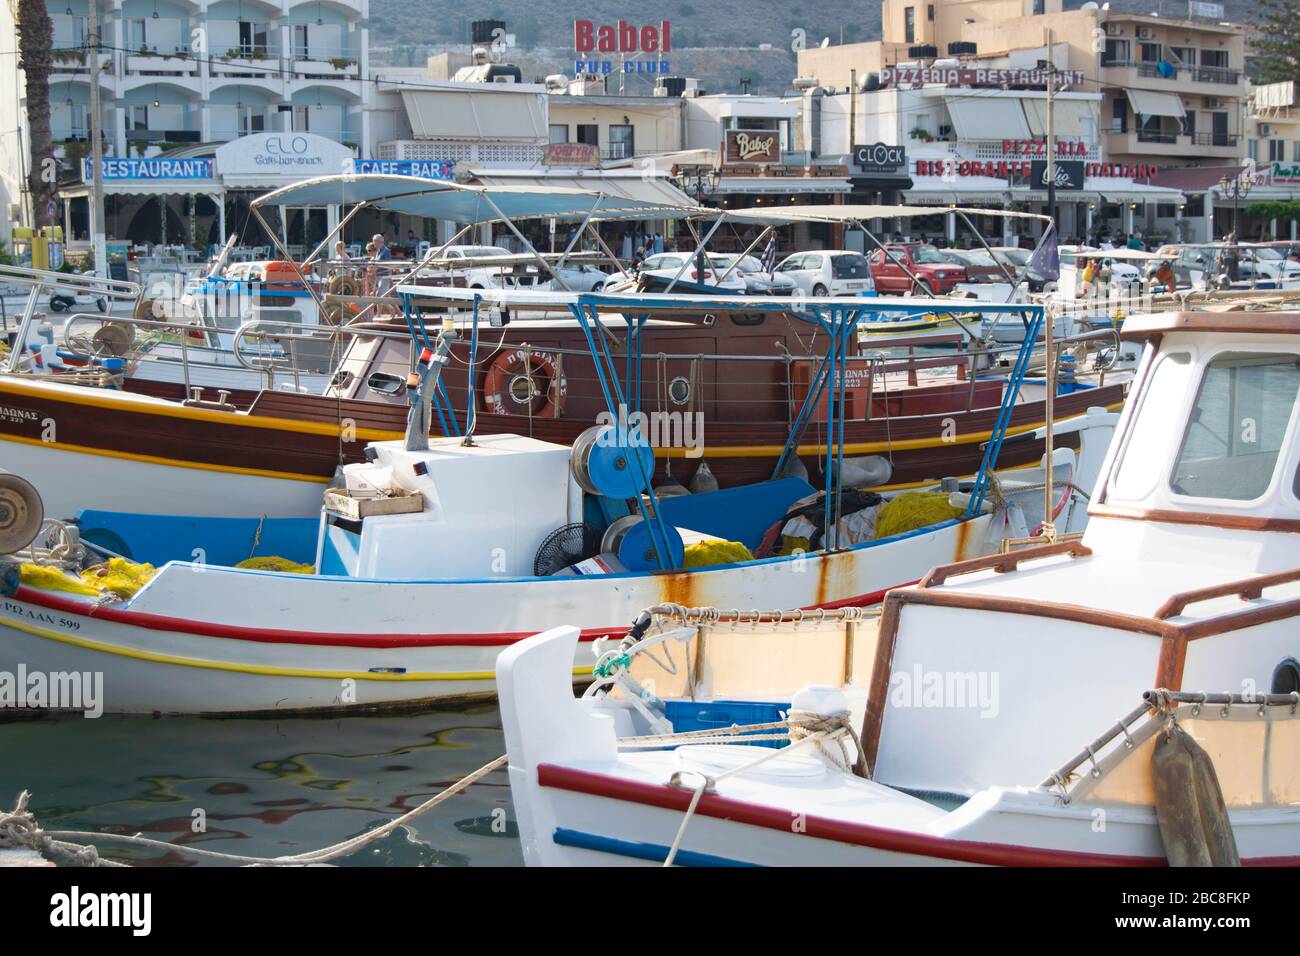 Petits bateaux aux couleurs vives dans une marina très animée de l'île grecque de Crète Banque D'Images